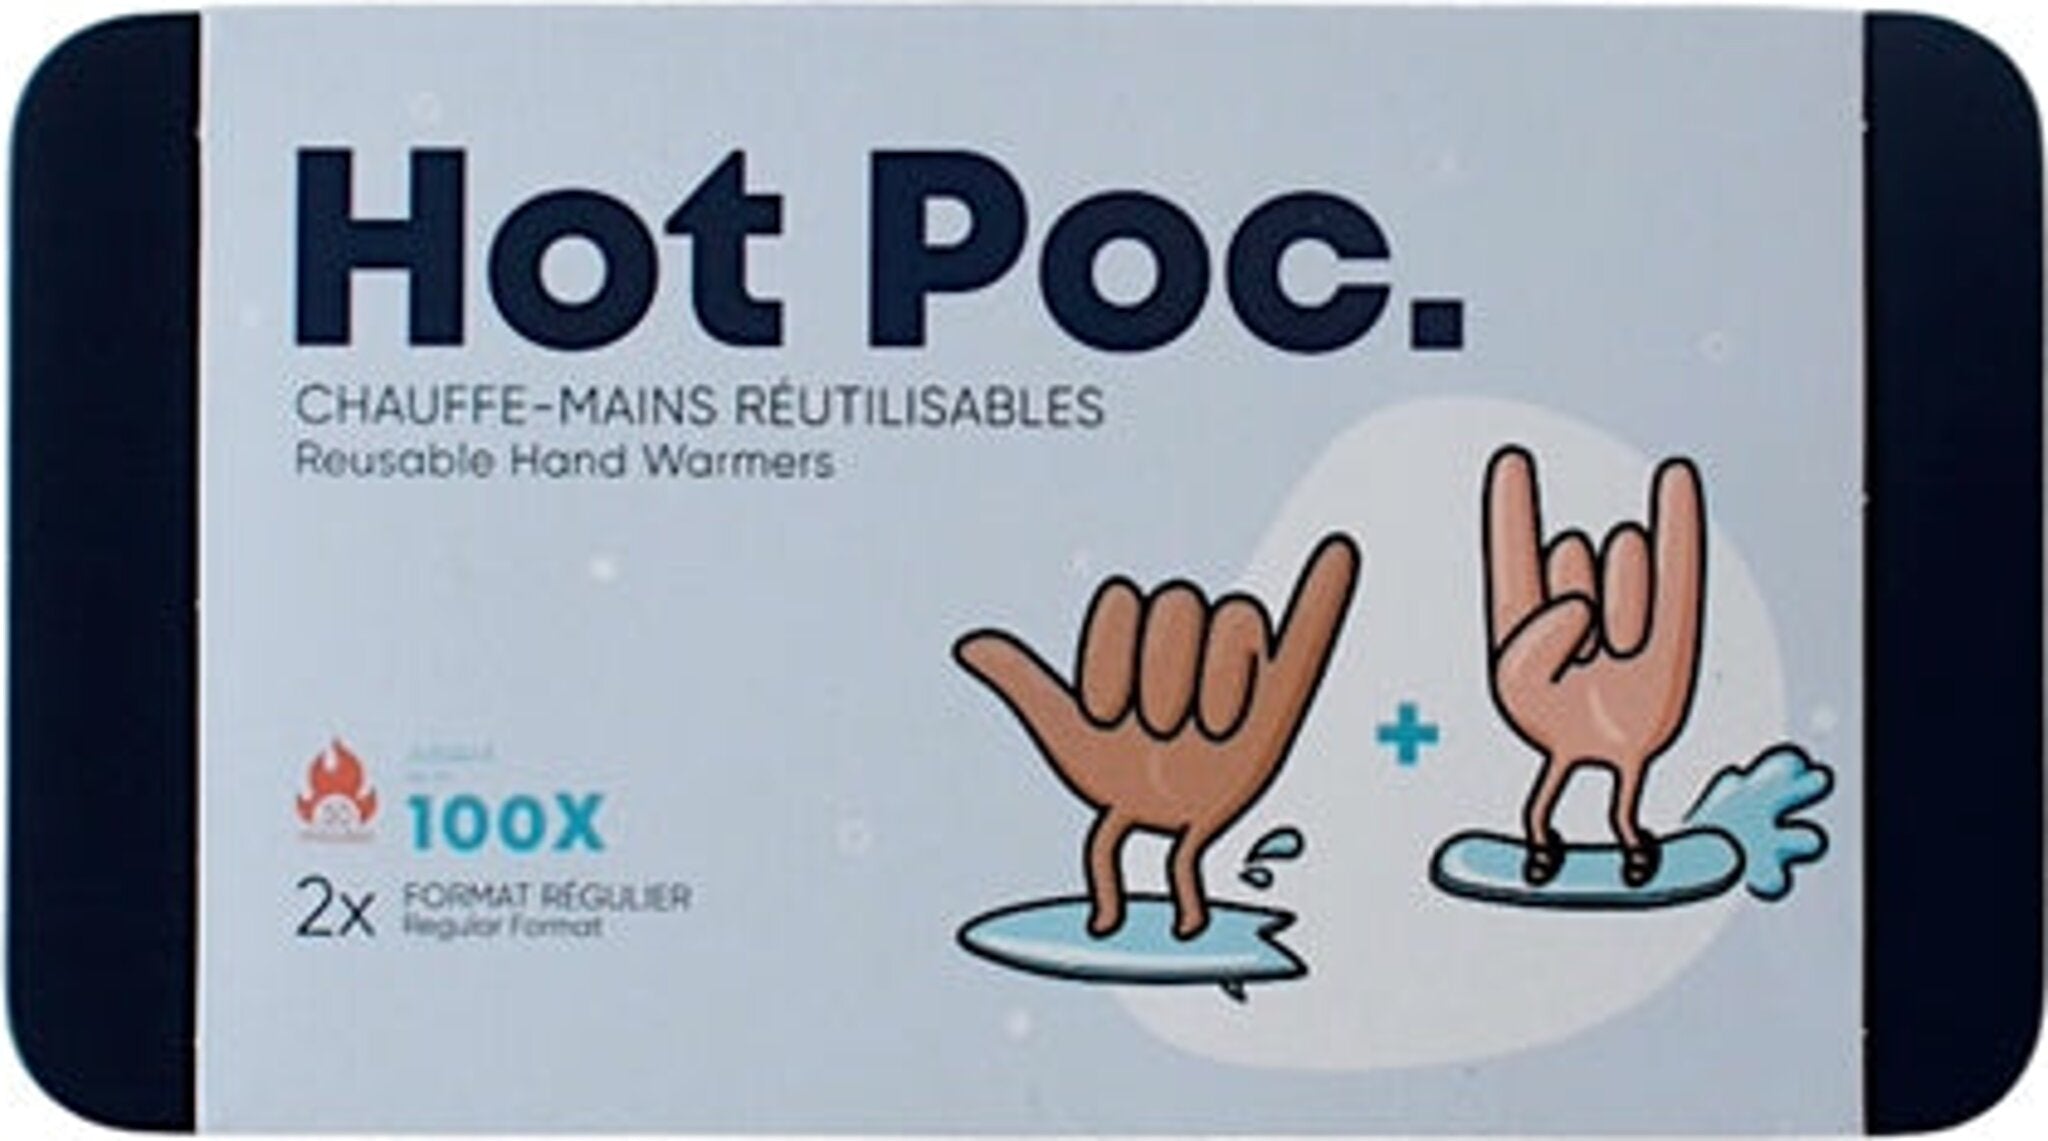 Chauffe-Mains Réutilisables Hot Poc